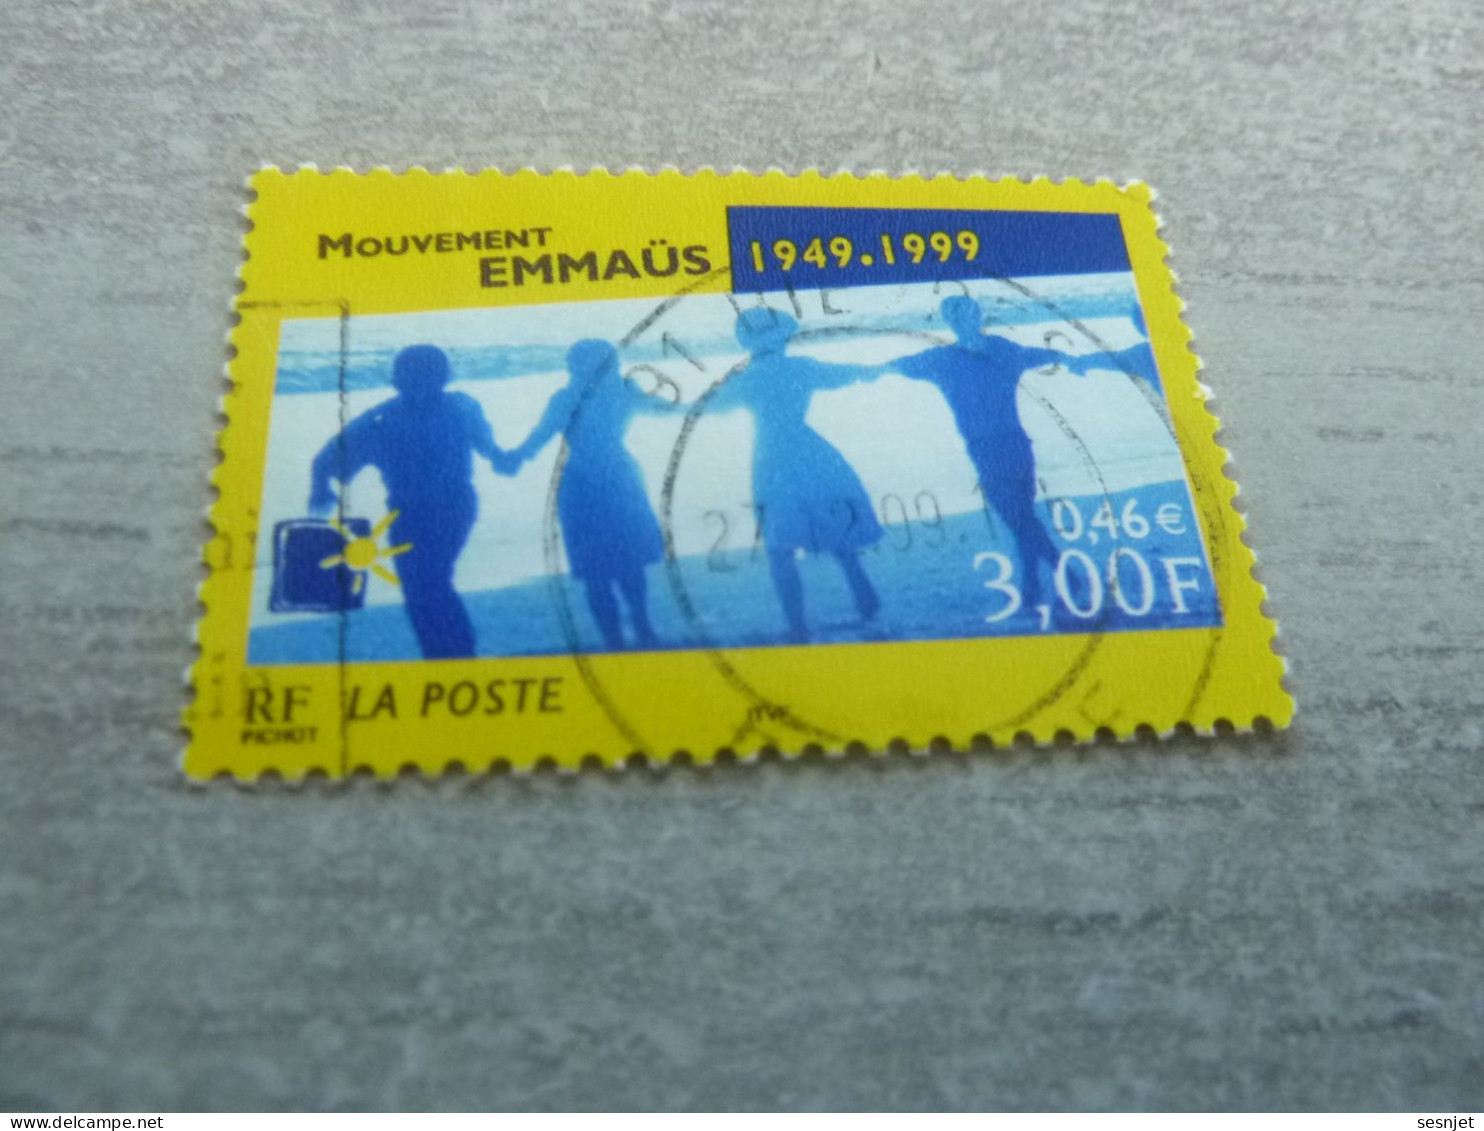 Cinquantenaire Du Mouvement Emmaüs - 3f. (0.46 €) - Yt 3282 - Multicolore - Oblitéré - Année 1999 - - Gebruikt